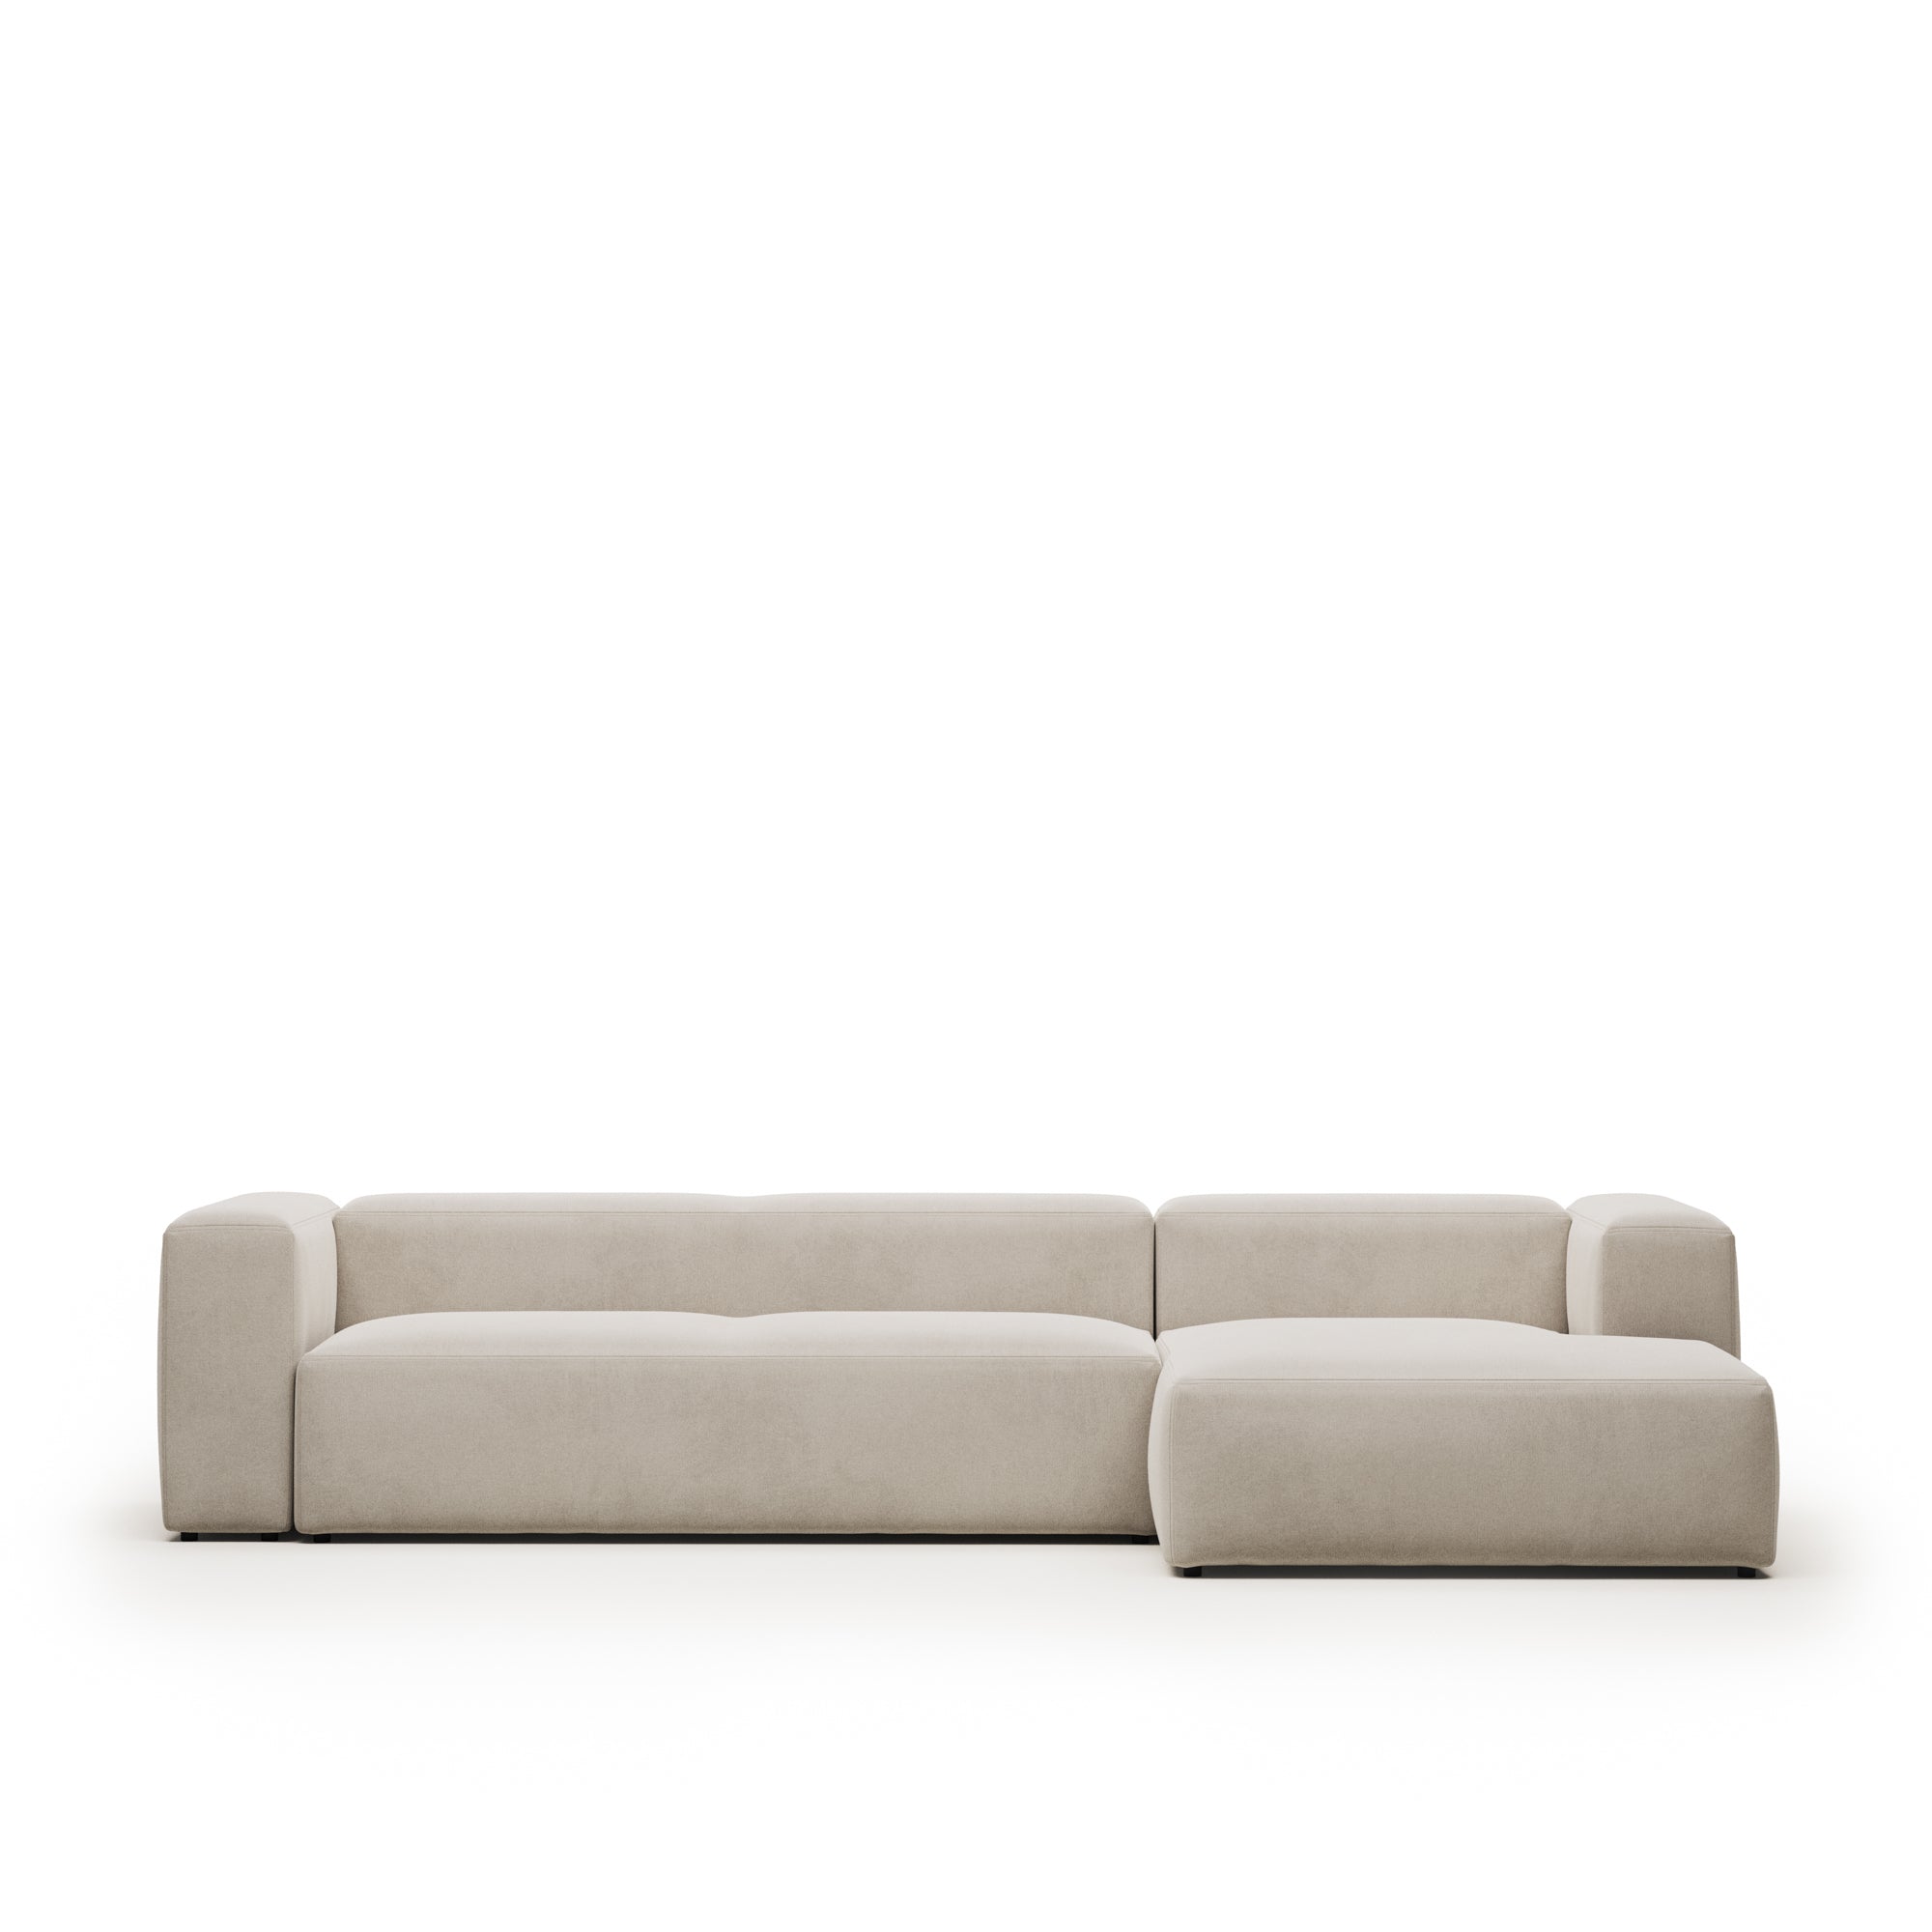 Blok 4 személyes kanapé jobb oldali fekvőfotellel, bézs színben, 330 cm